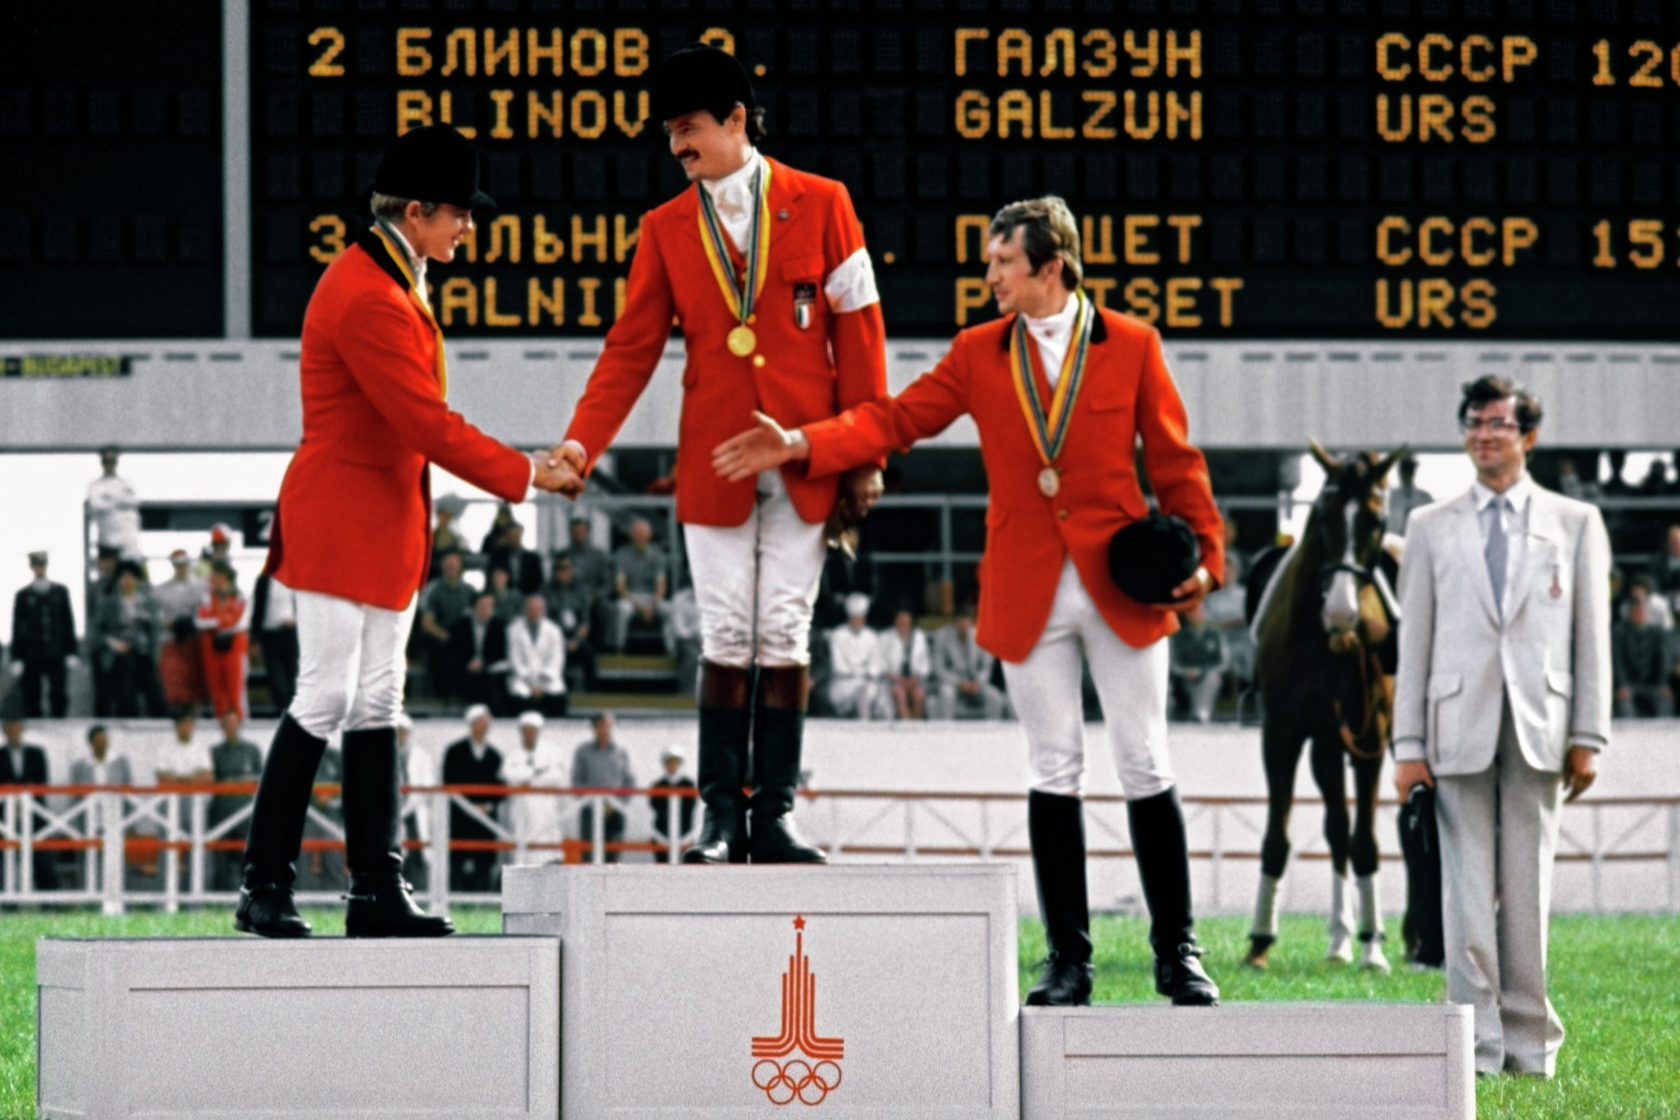 Конное милитари в программе олимпиады 9. Пьедестал Олимпийских игр 1980. Чемпионы Олимпийских игр по конному спорту.